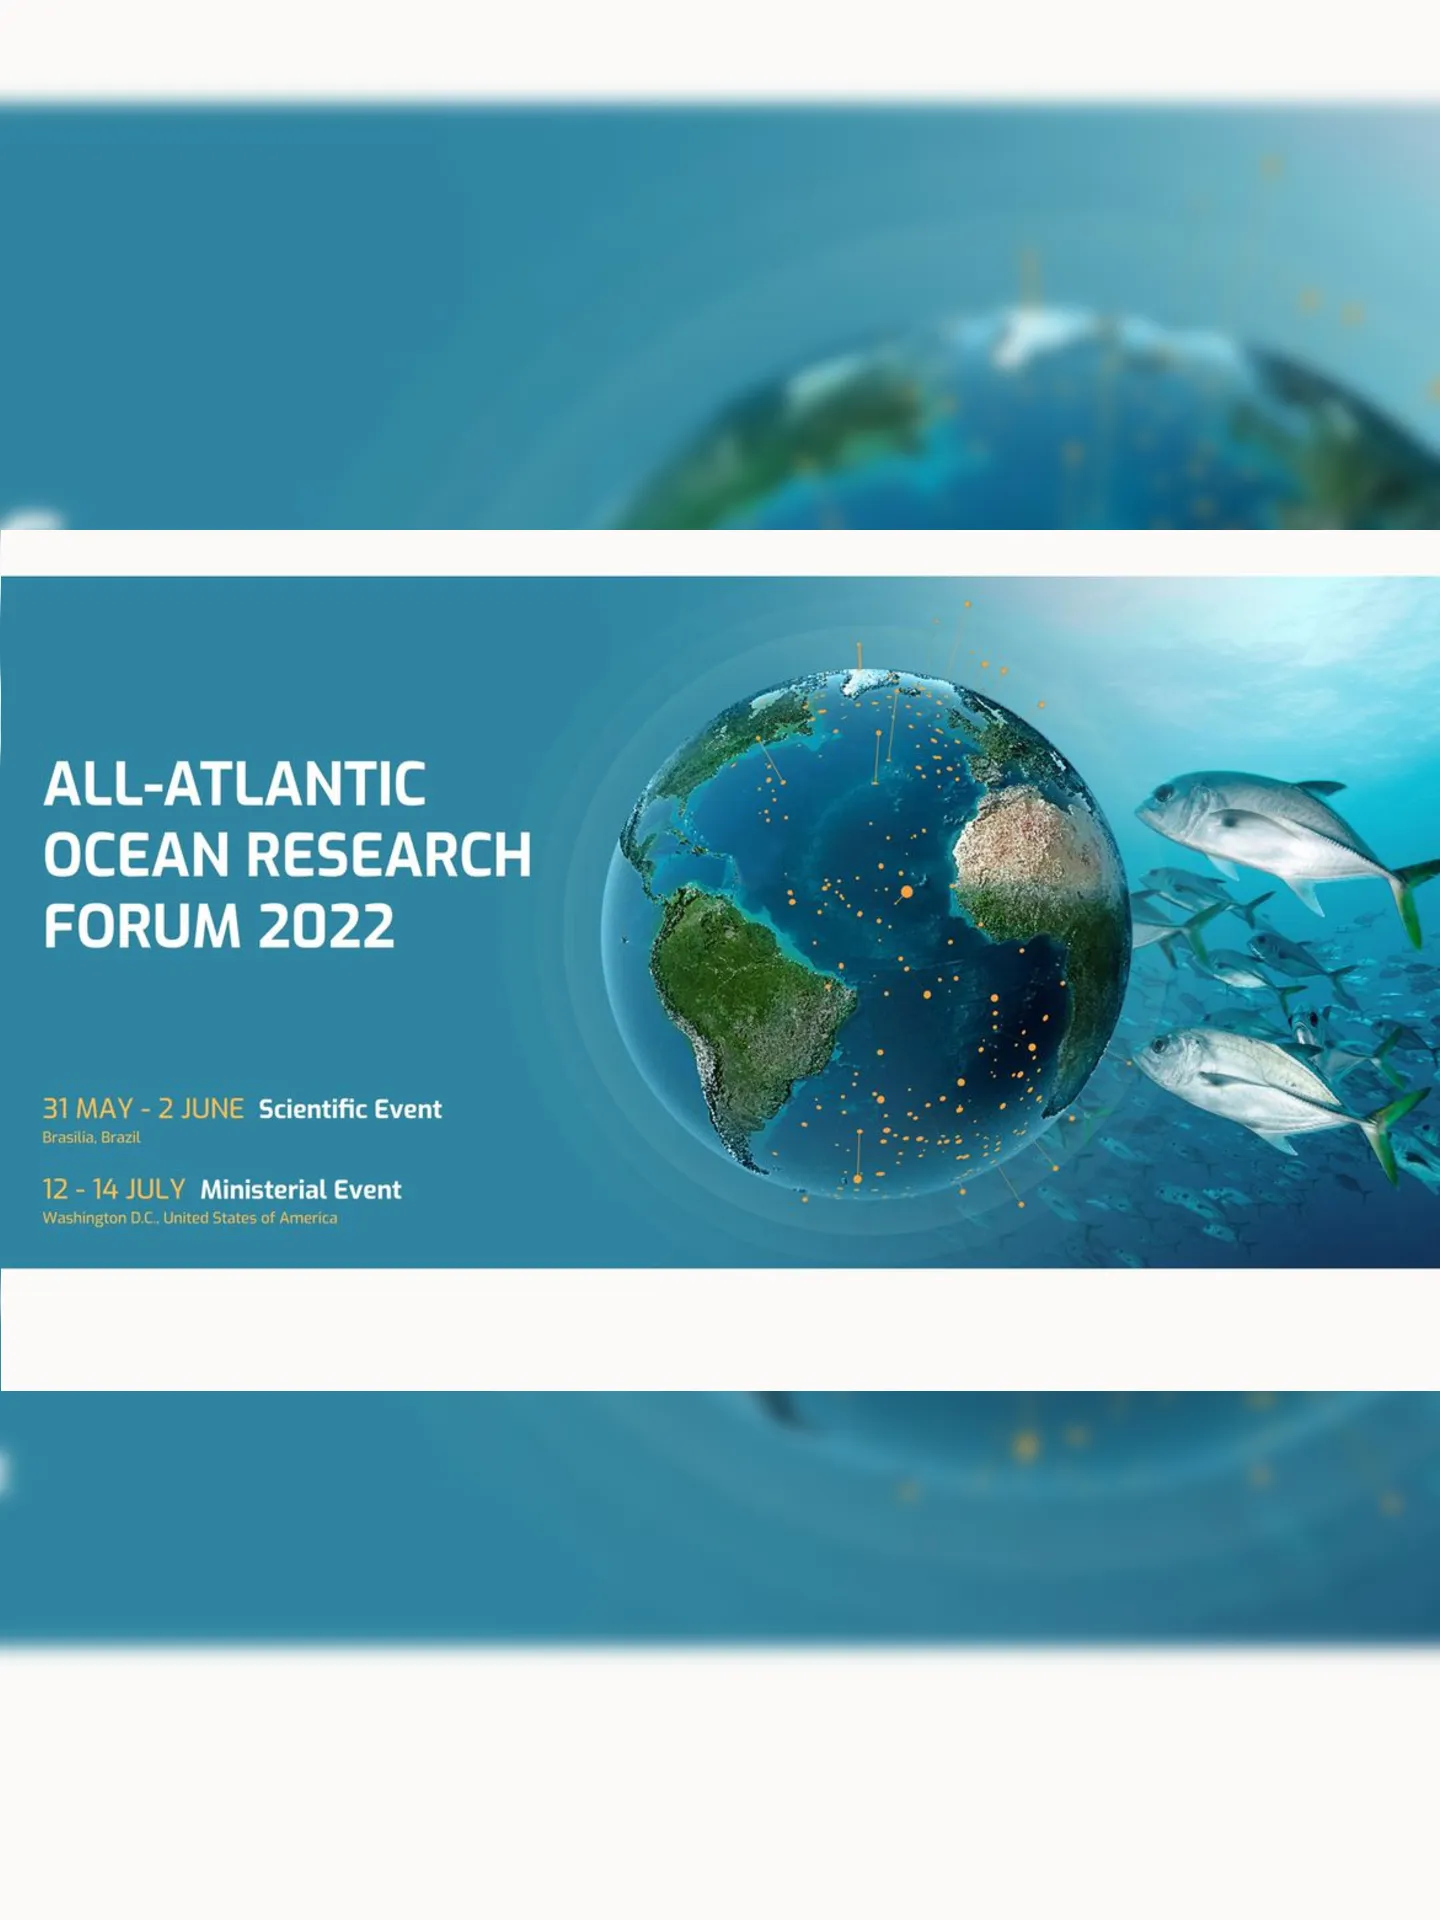 A assinatura da declaração ocorreu durante o evento ministerial que integra o Fórum 2022 de Pesquisa Oceânica de Todo o Atlântico